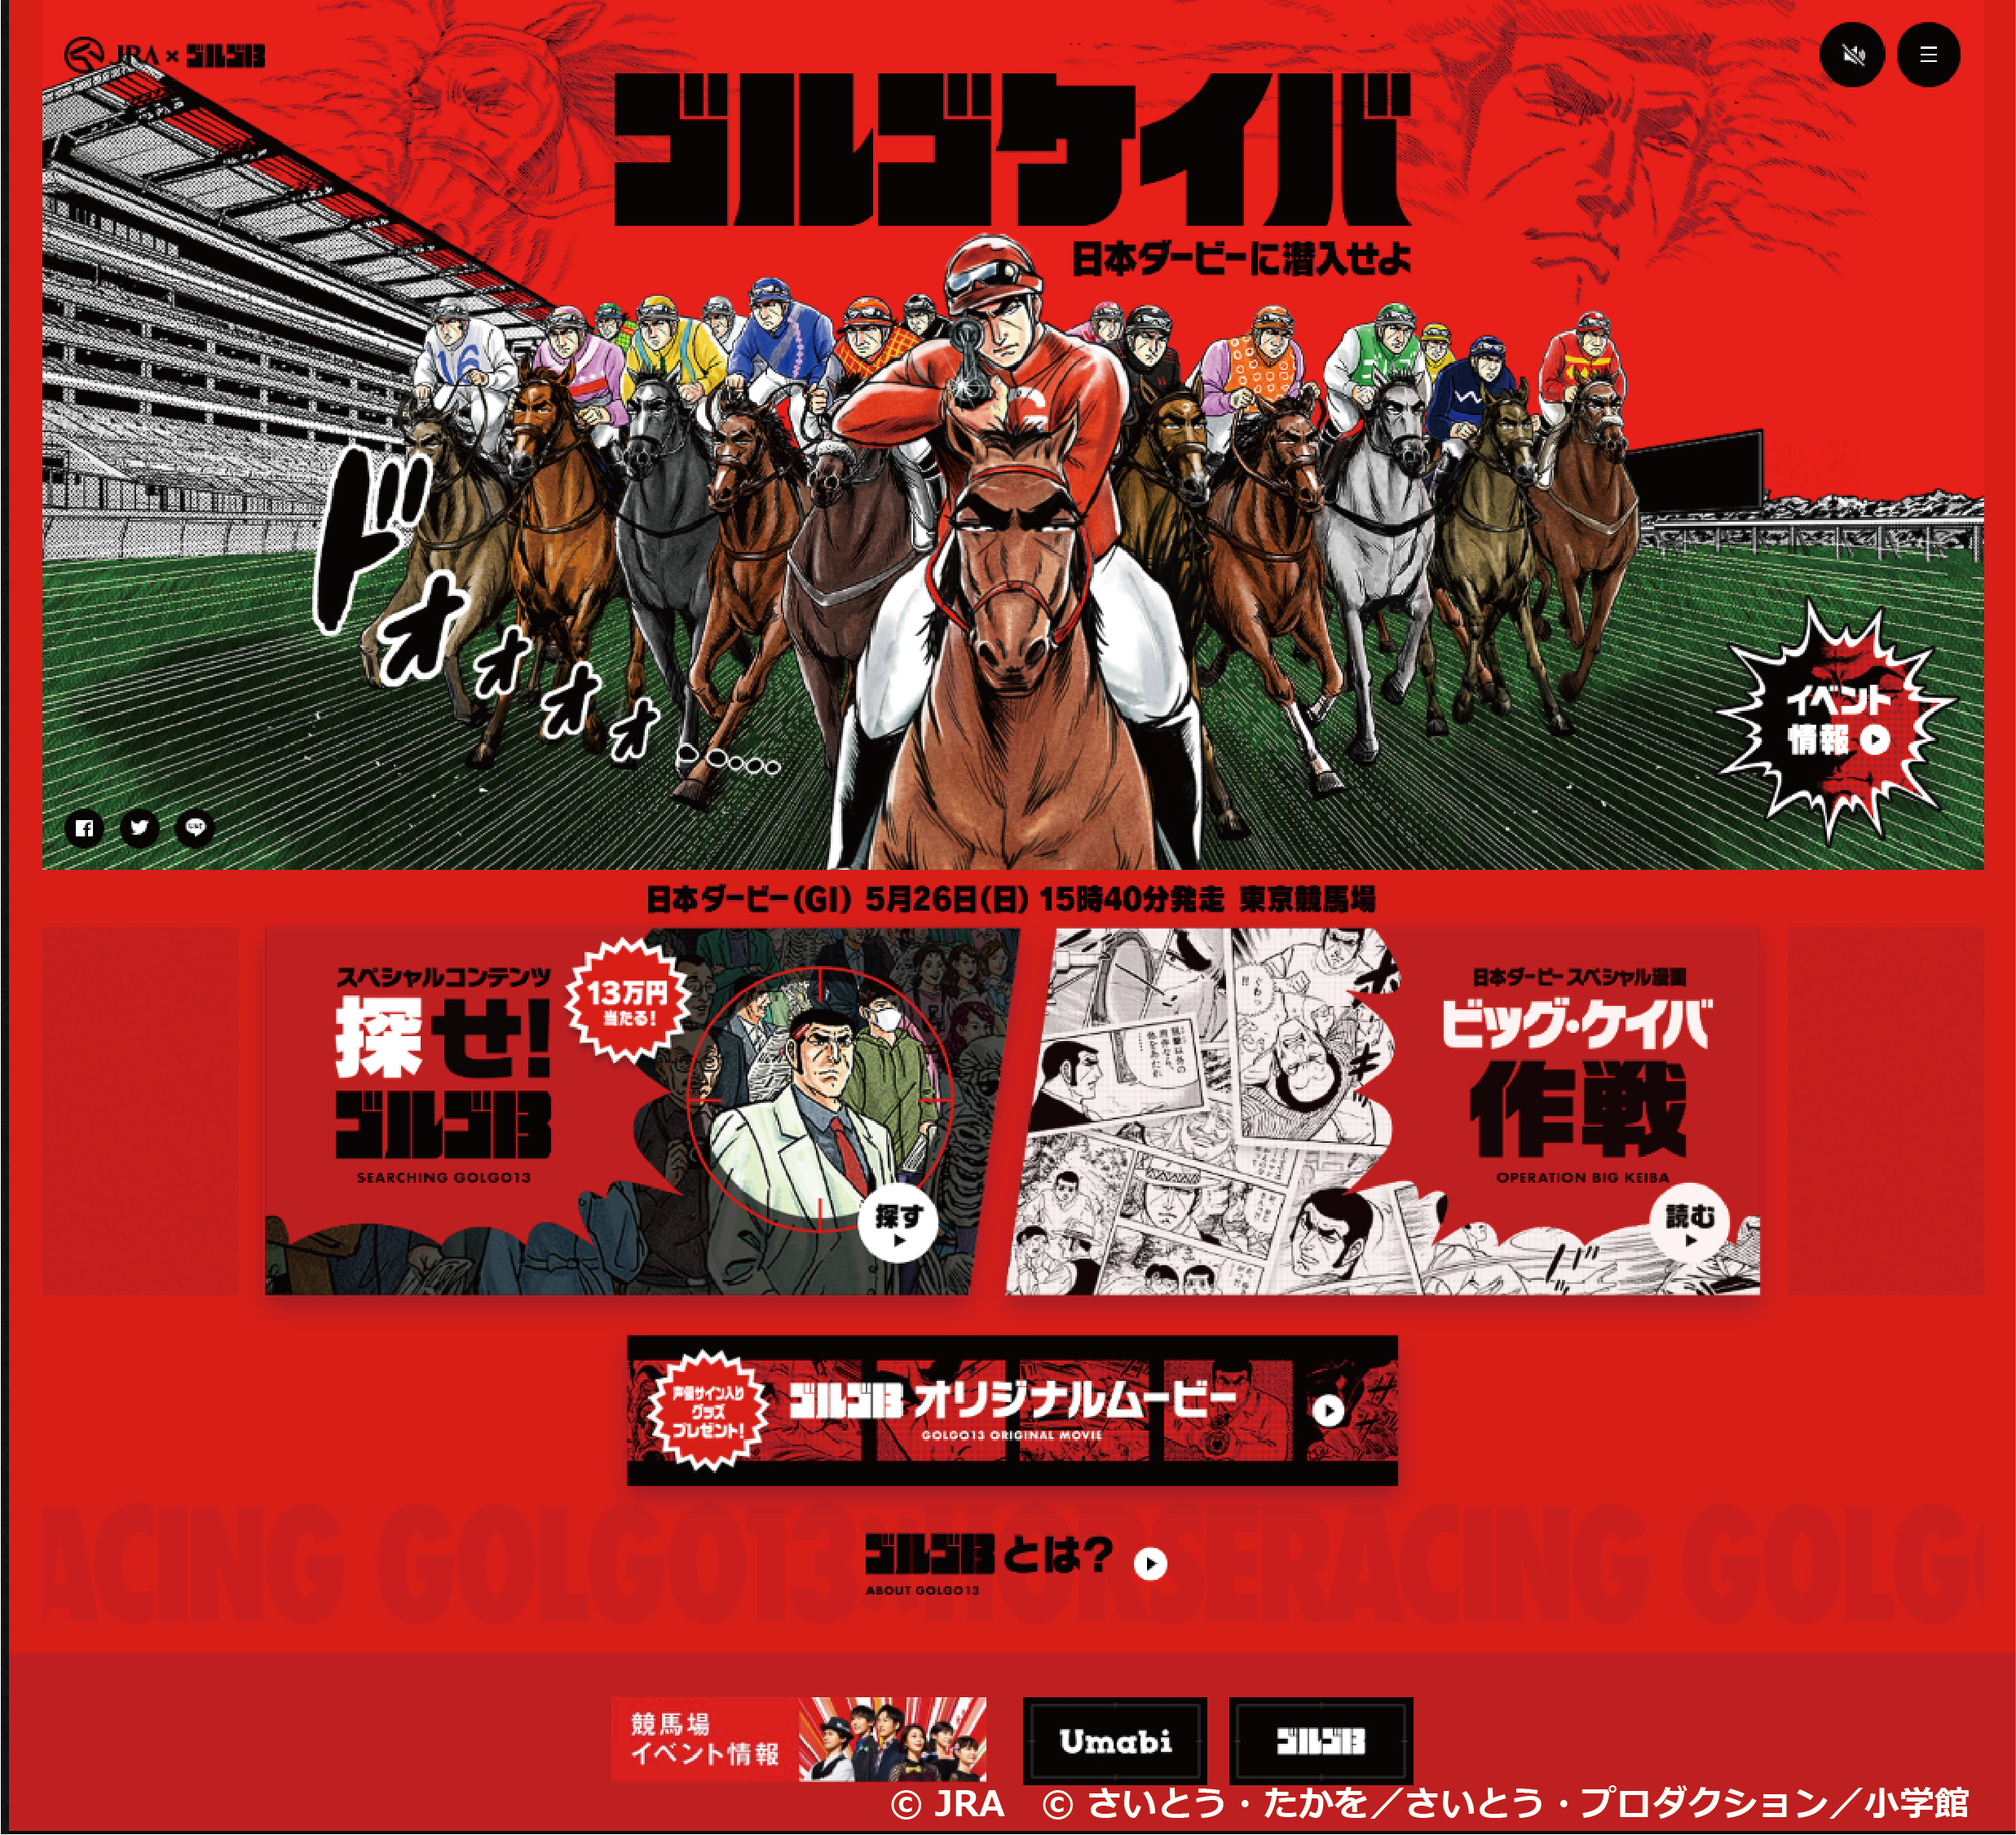 日本ダービー 連載50周年を迎えた ゴルゴ13 超a級コラボ実現 オリジナルゲームやスペシャルコミック 豪華声優を起用した動画も公開 日本中央競馬会のプレスリリース